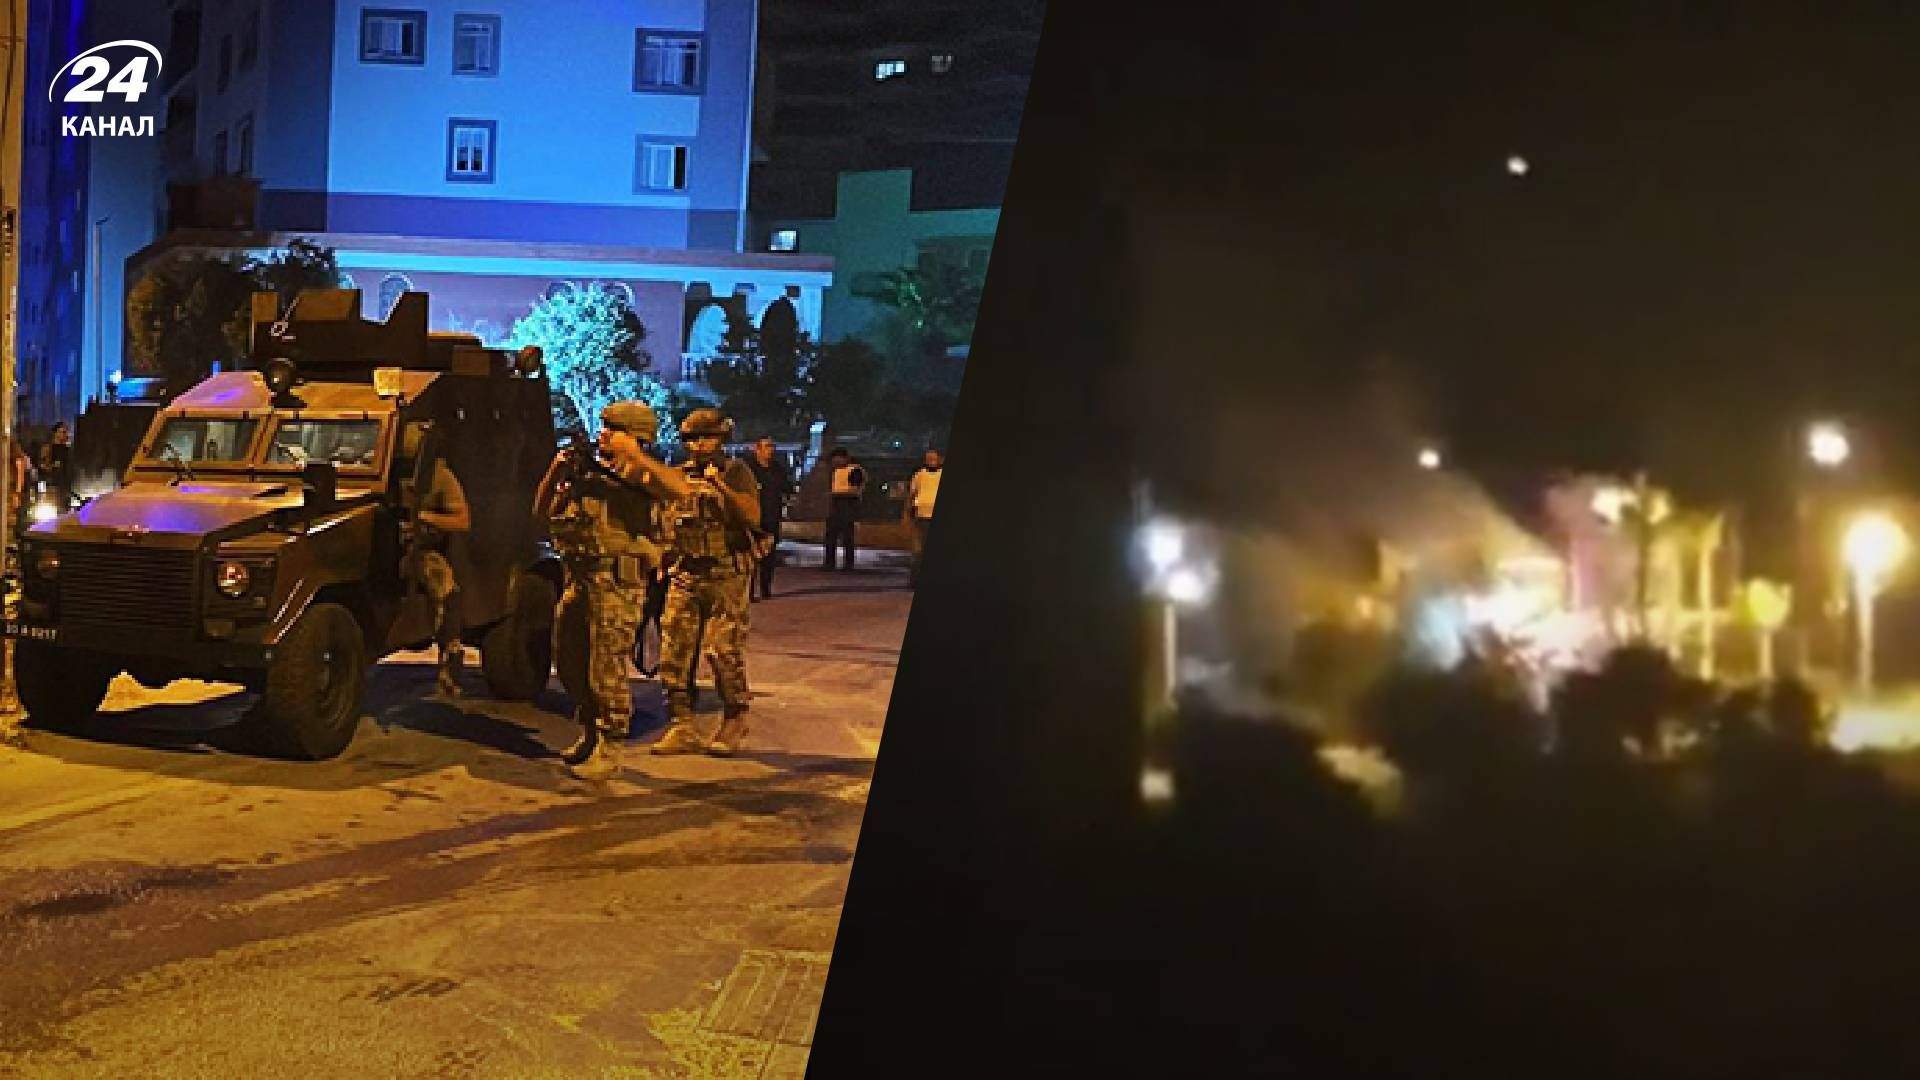 Теракт в Турции - неизвестные стреляли в полицейских, в сети пишут о смертниках